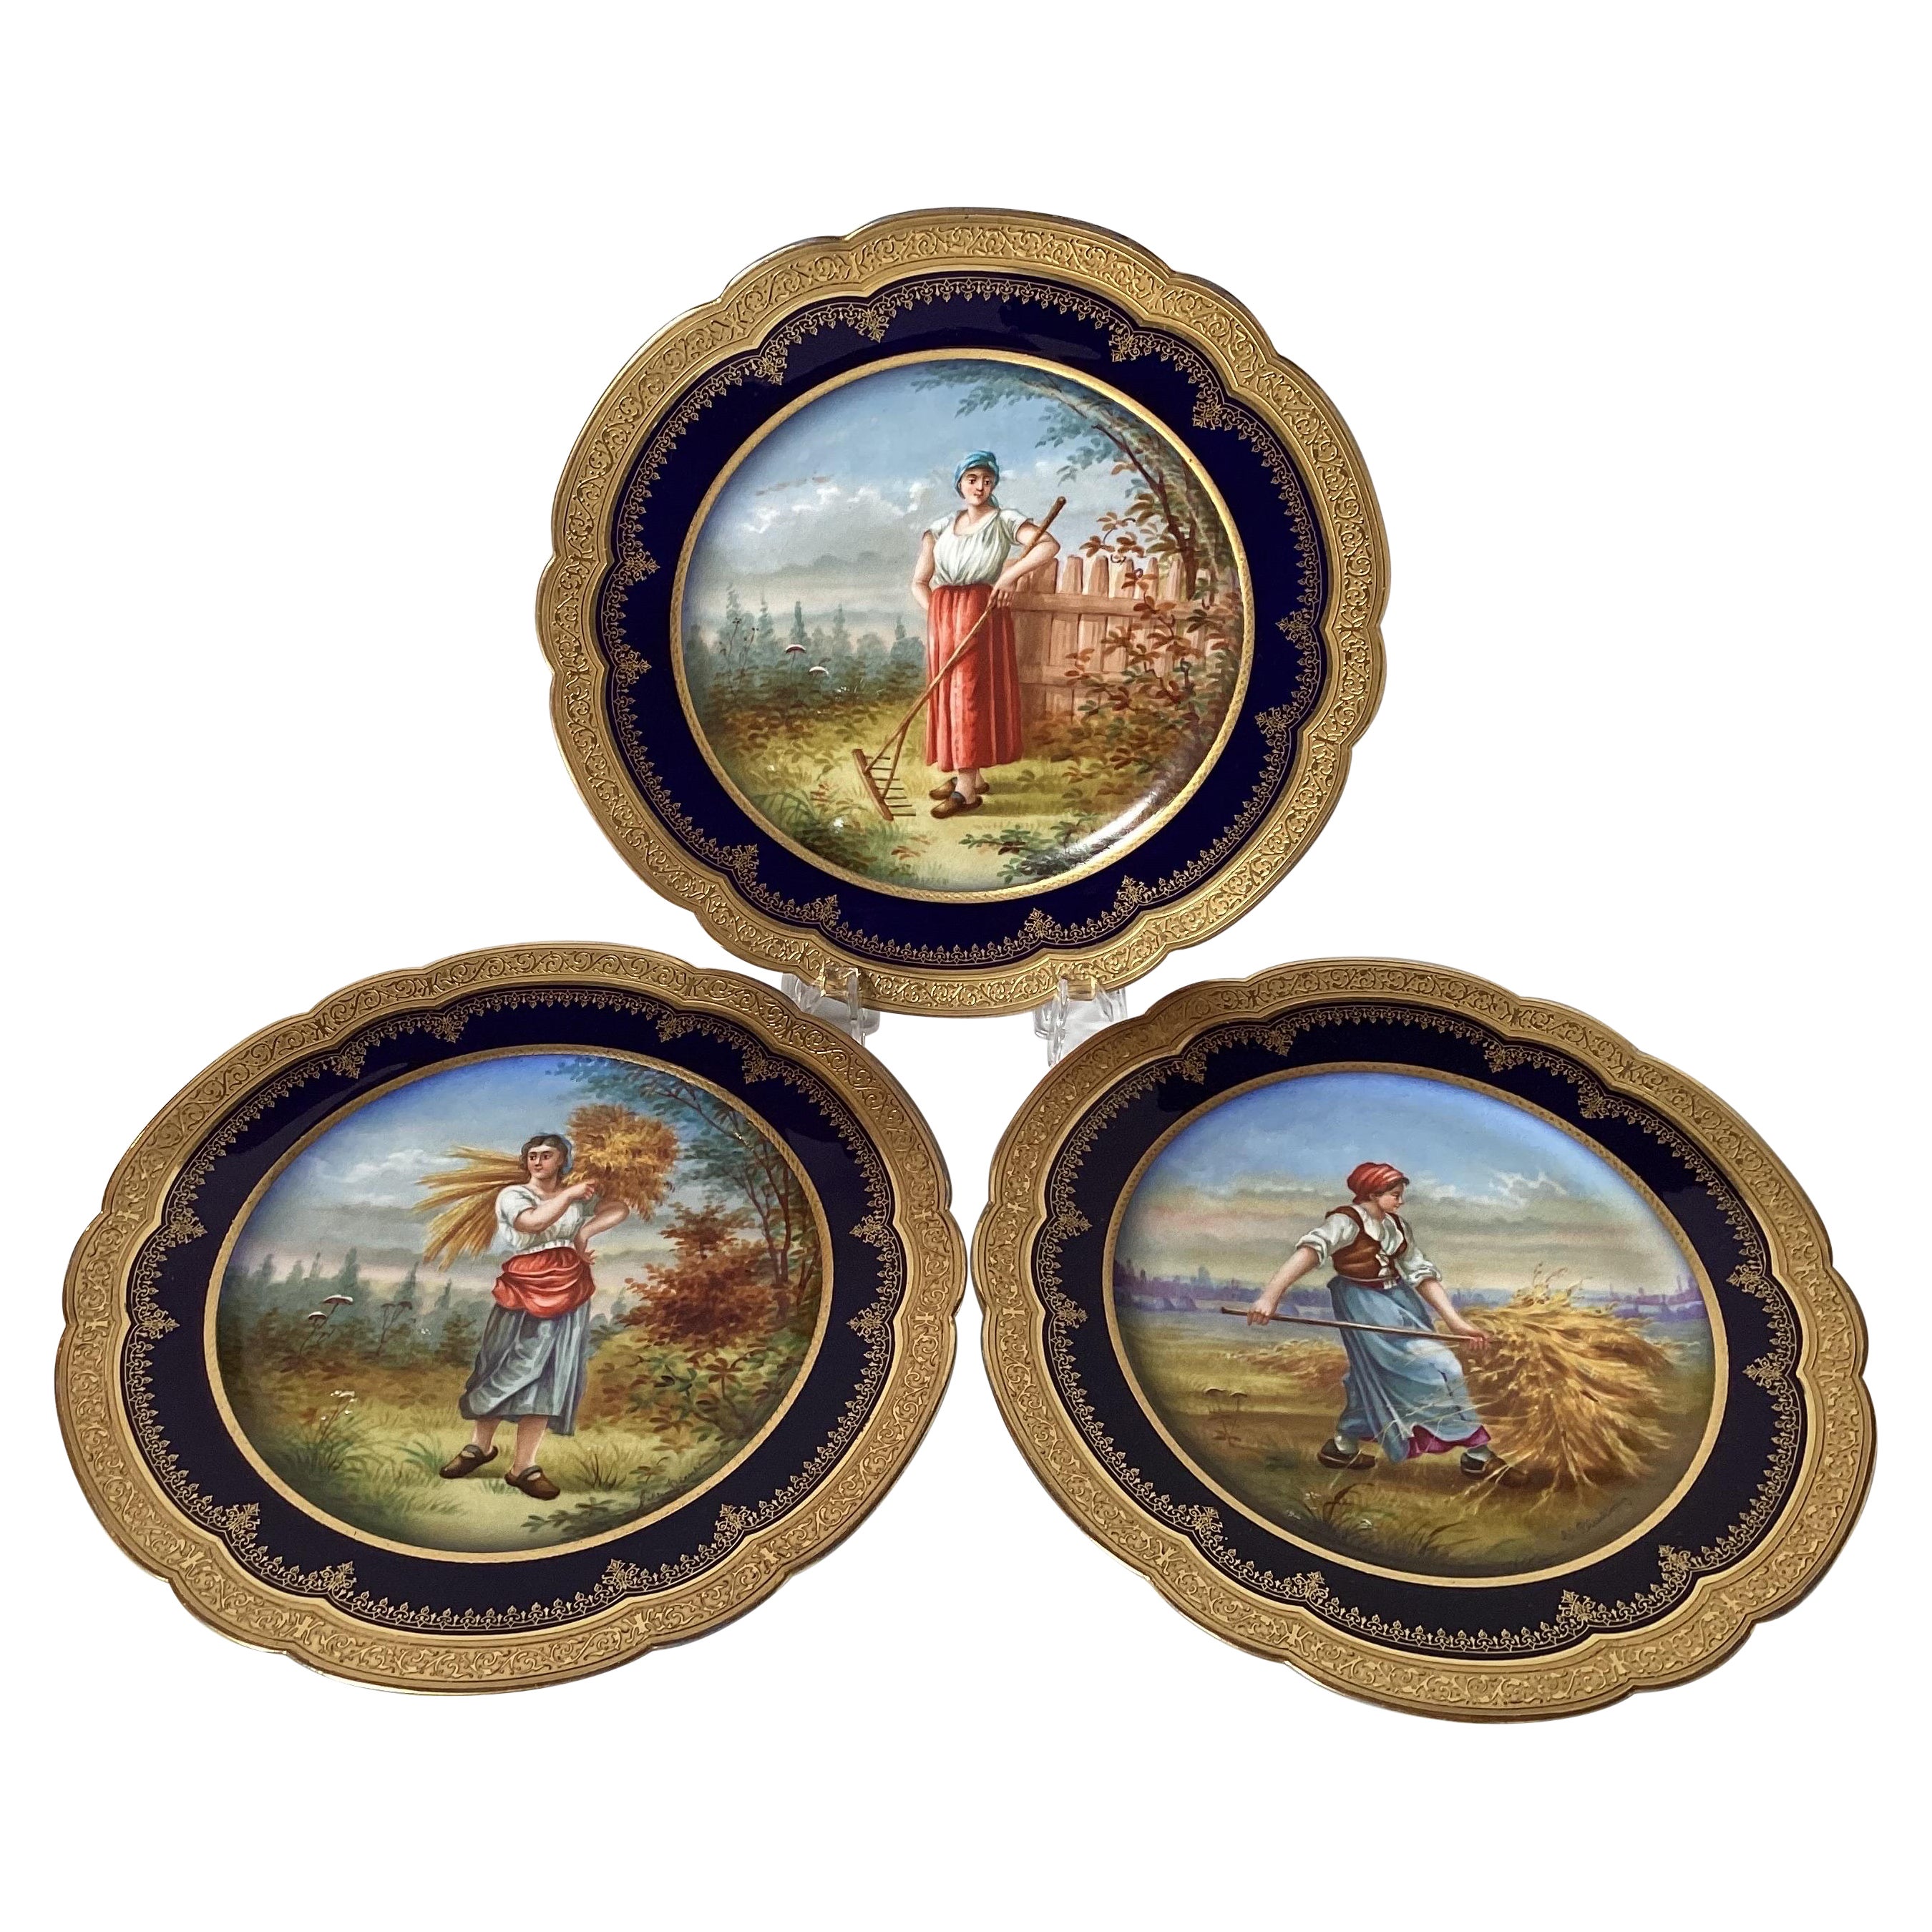 Ein Satz von drei Sèvres-Porzellan-Kabinetttellern aus den 1840er Jahren